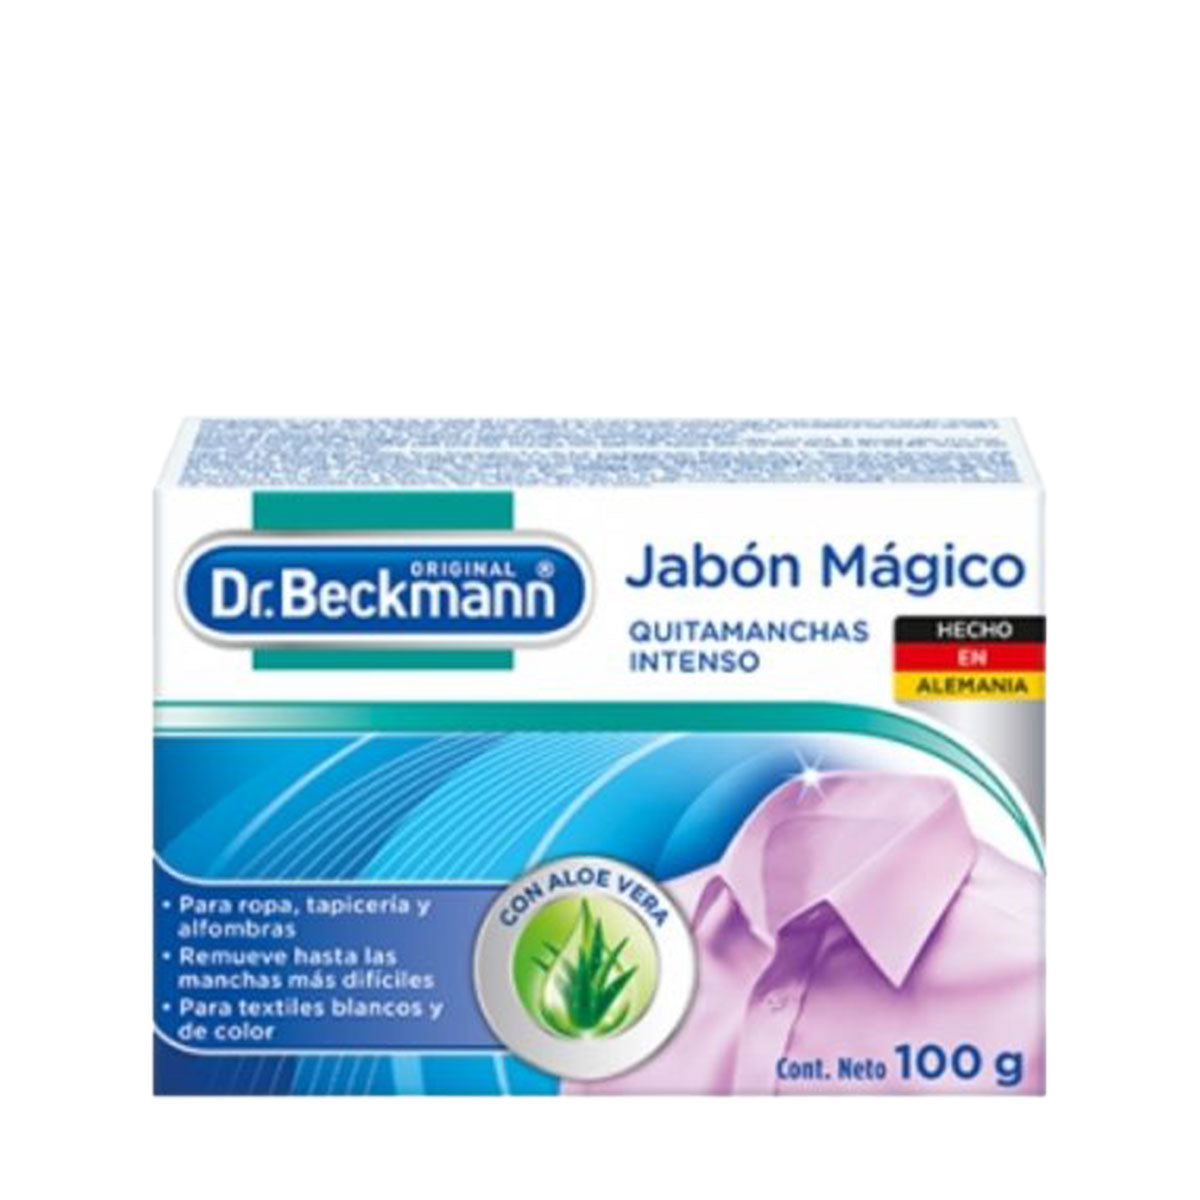 Jabón Mágico Quitamanchas Intensas para Ropa y Tapicería 100 gr Dr. Beckmann. Producto Alemán Sustentable